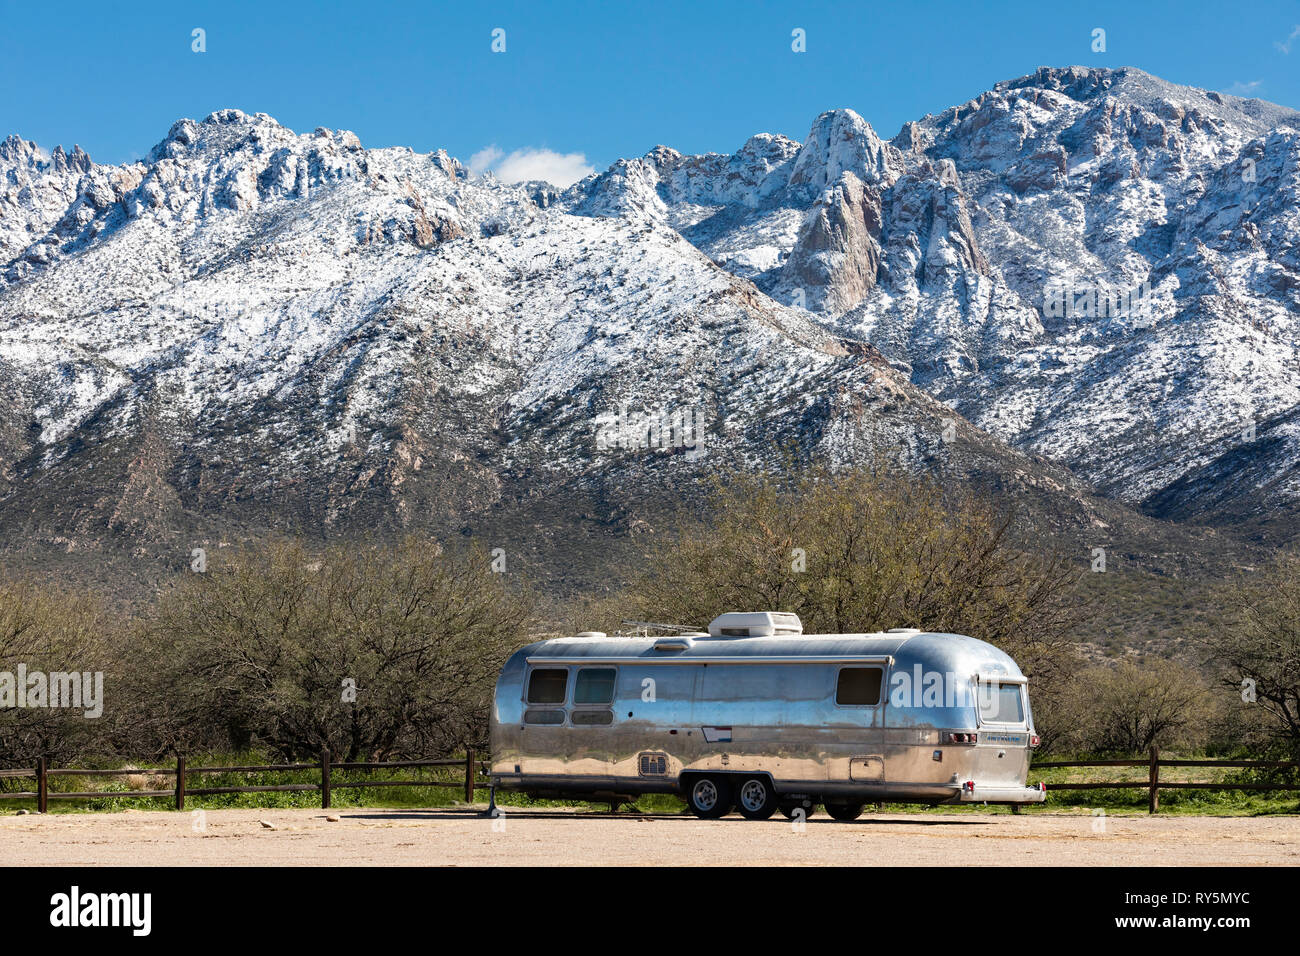 Remorque Airstream garé avec les montagnes enneigées en arrière-plan, Catalina State Park, Tucson, Arizona Banque D'Images